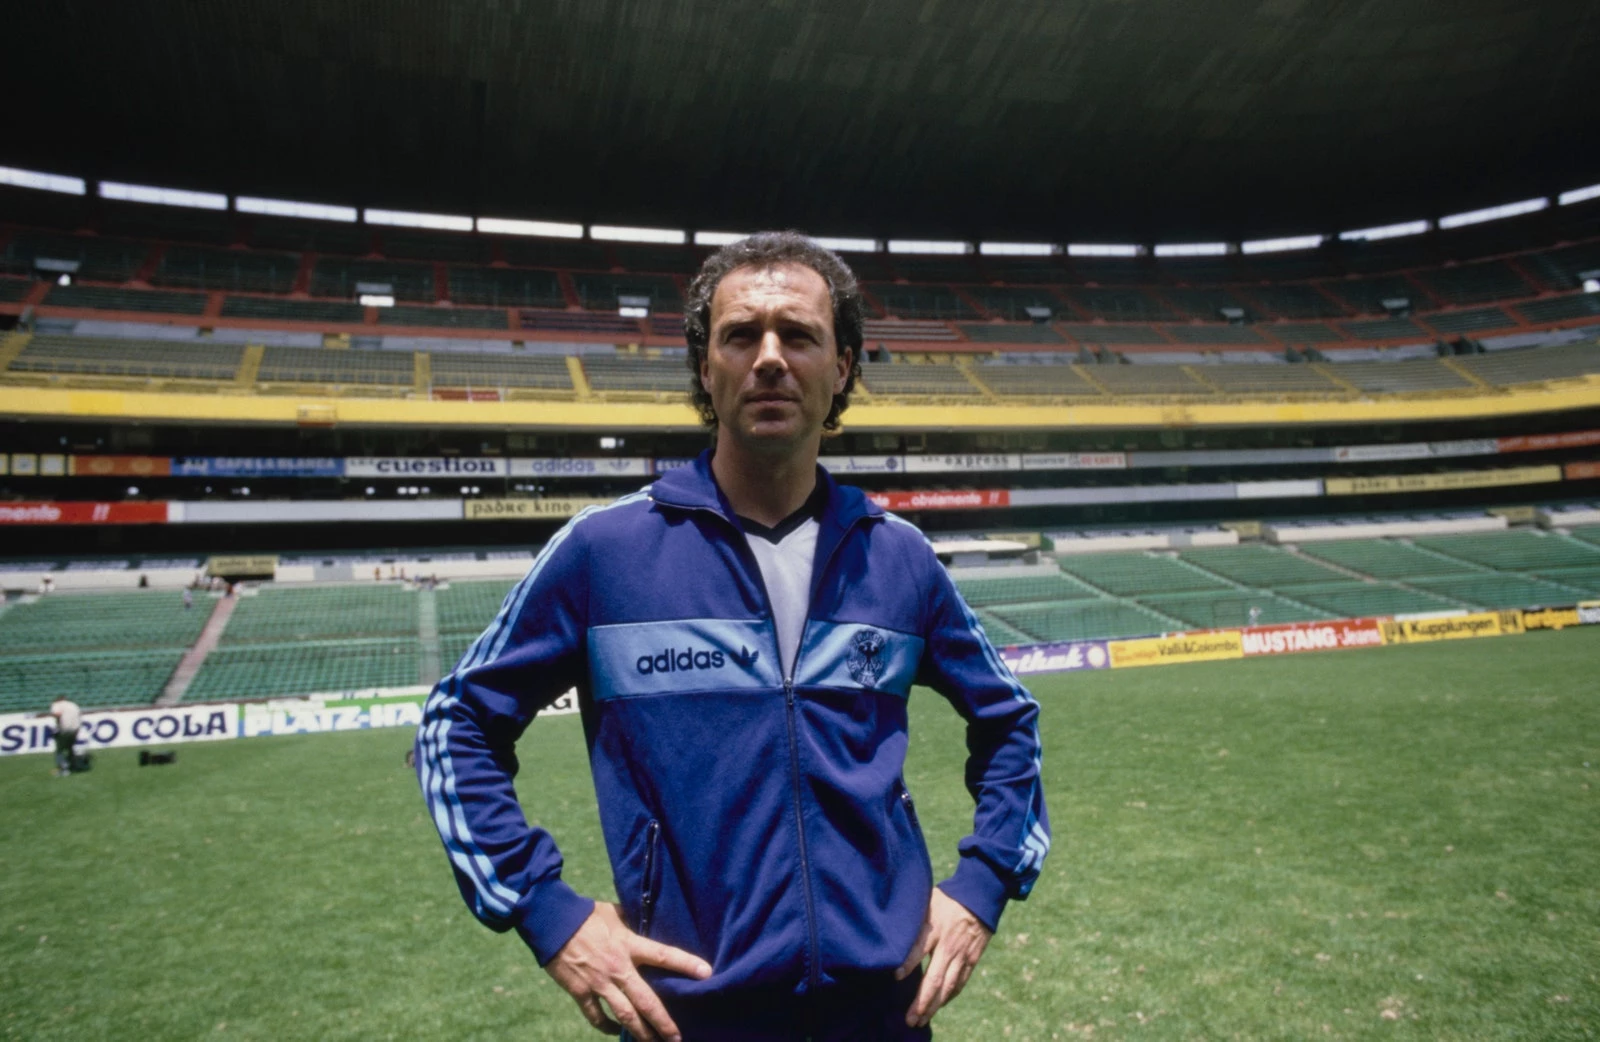 Легендарний футболіст Франц Бекенбауер, який став тренером, демонструє свій фірмовий спортивний костюм adidas на Чемпіонаті світу з футболу 1986 року0